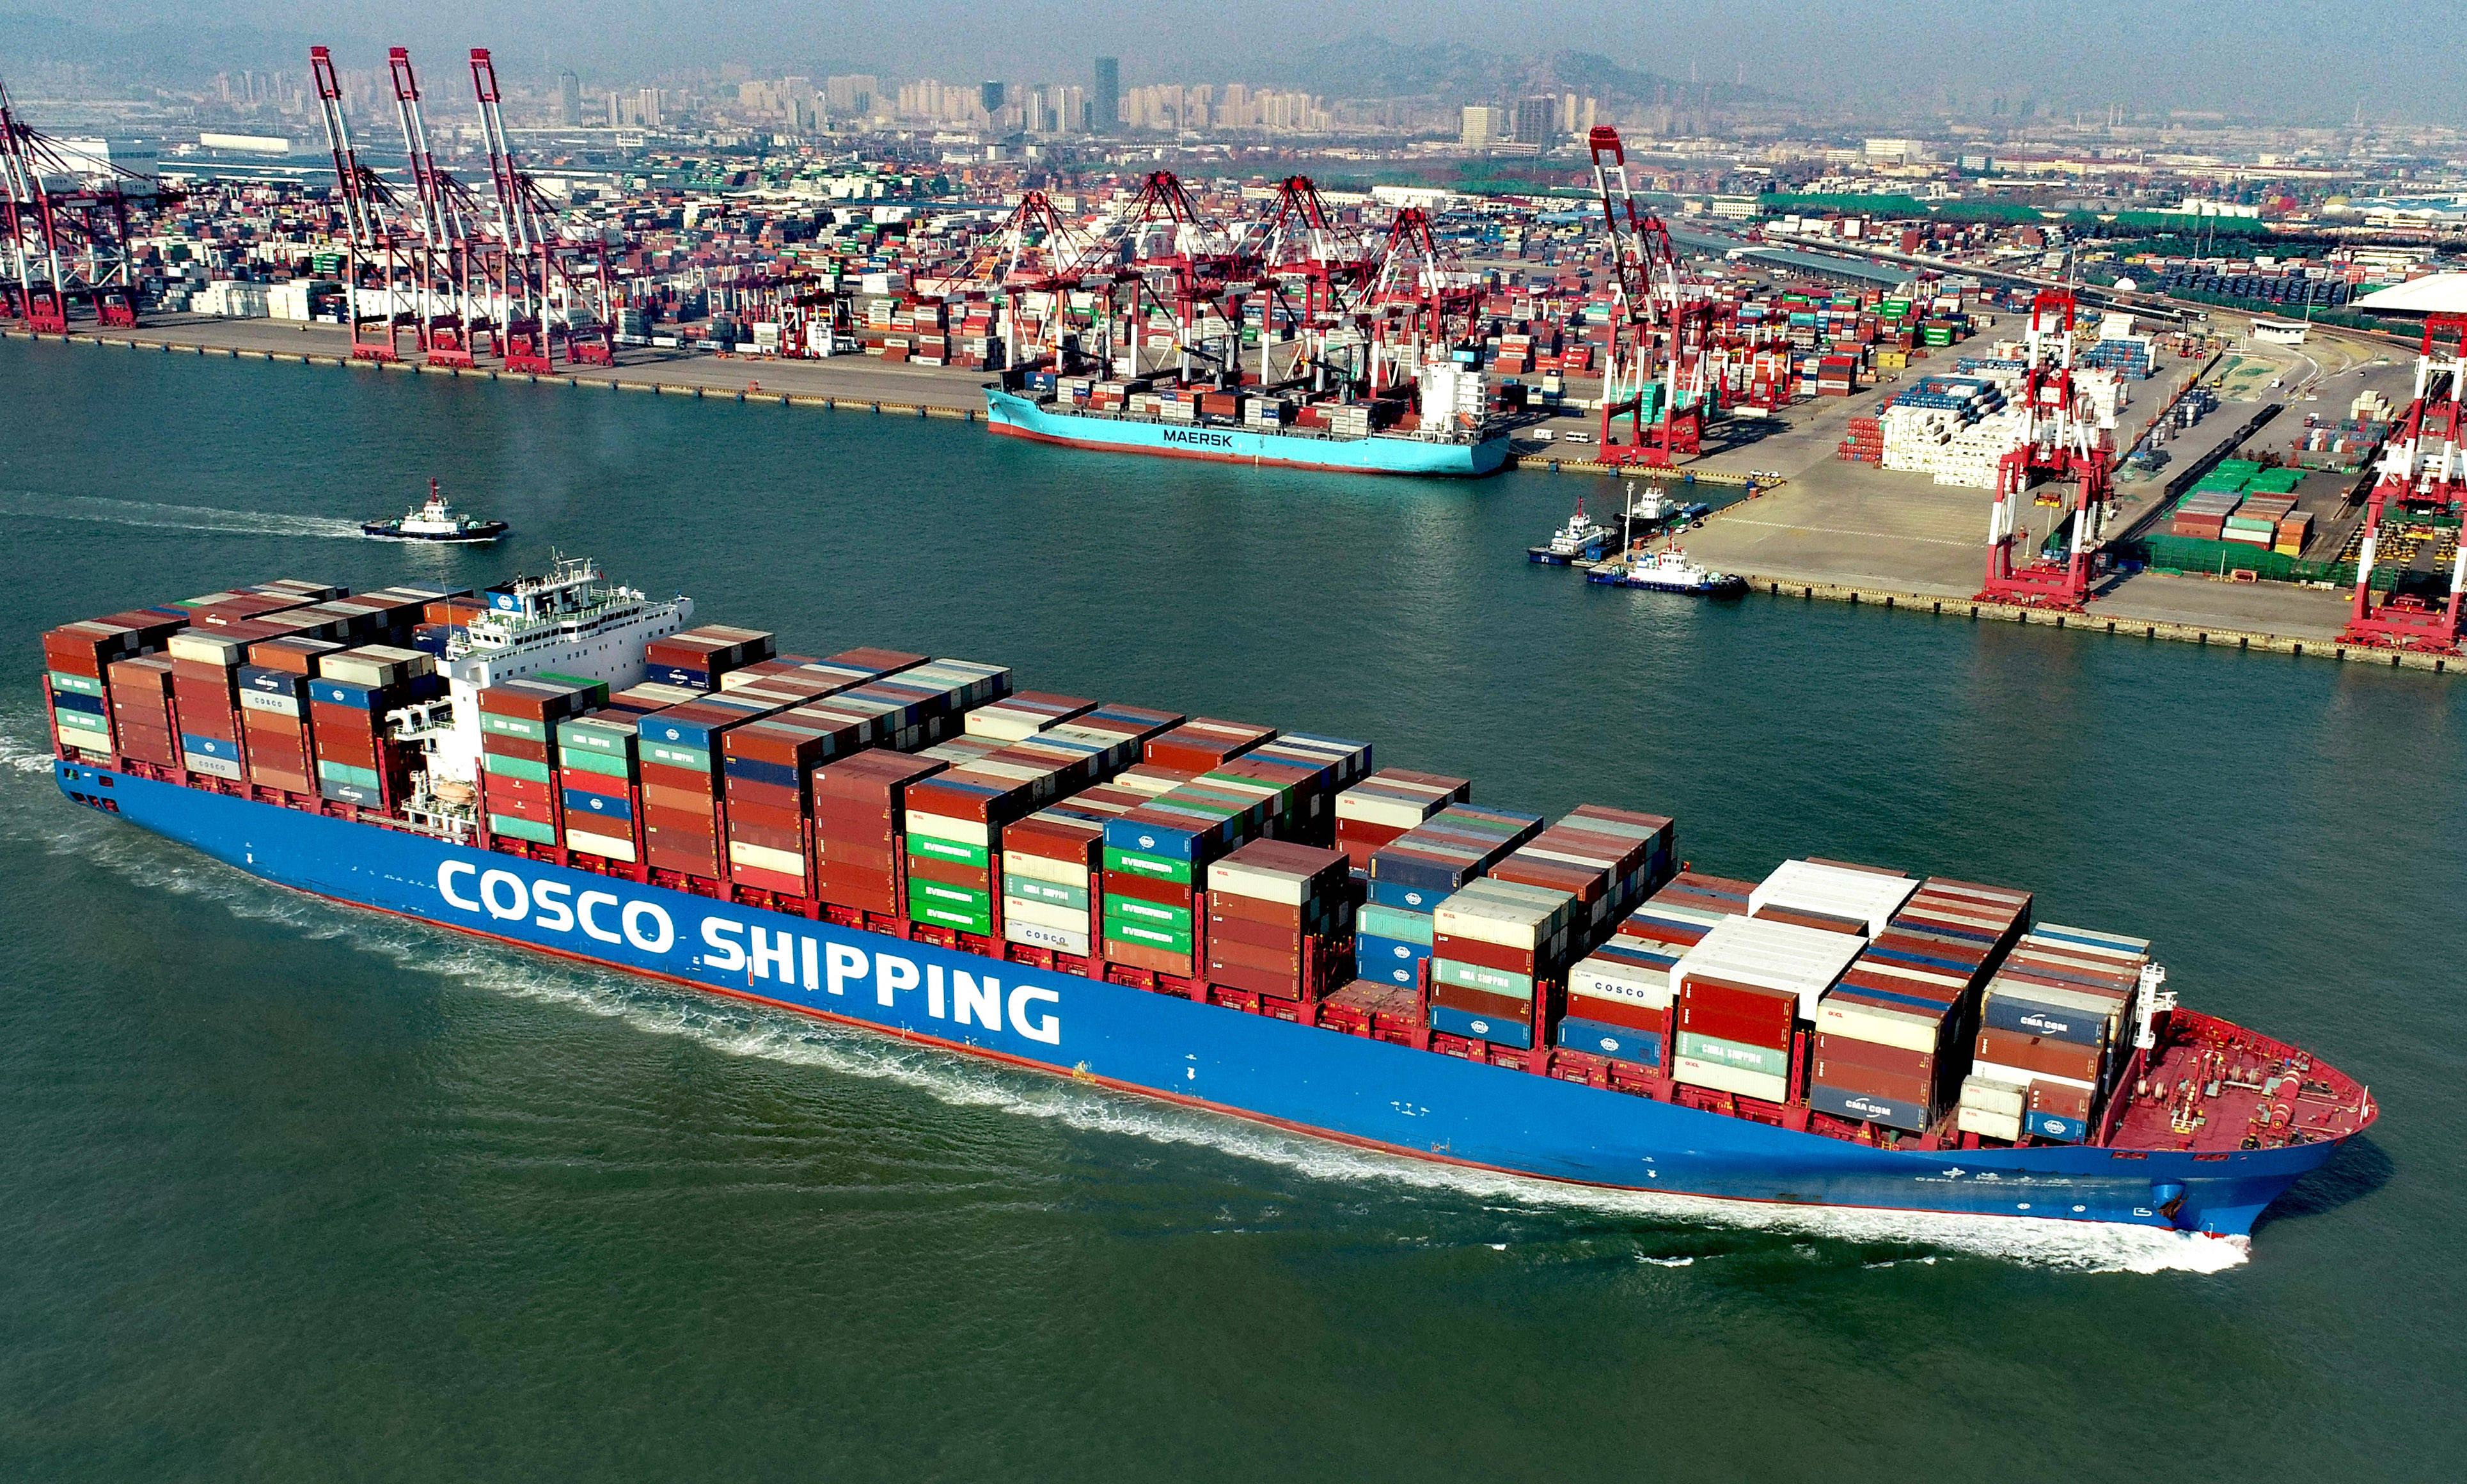 青岛港前湾集装箱码头,一艘满载集装箱的货轮驶出港口(无人机照片)